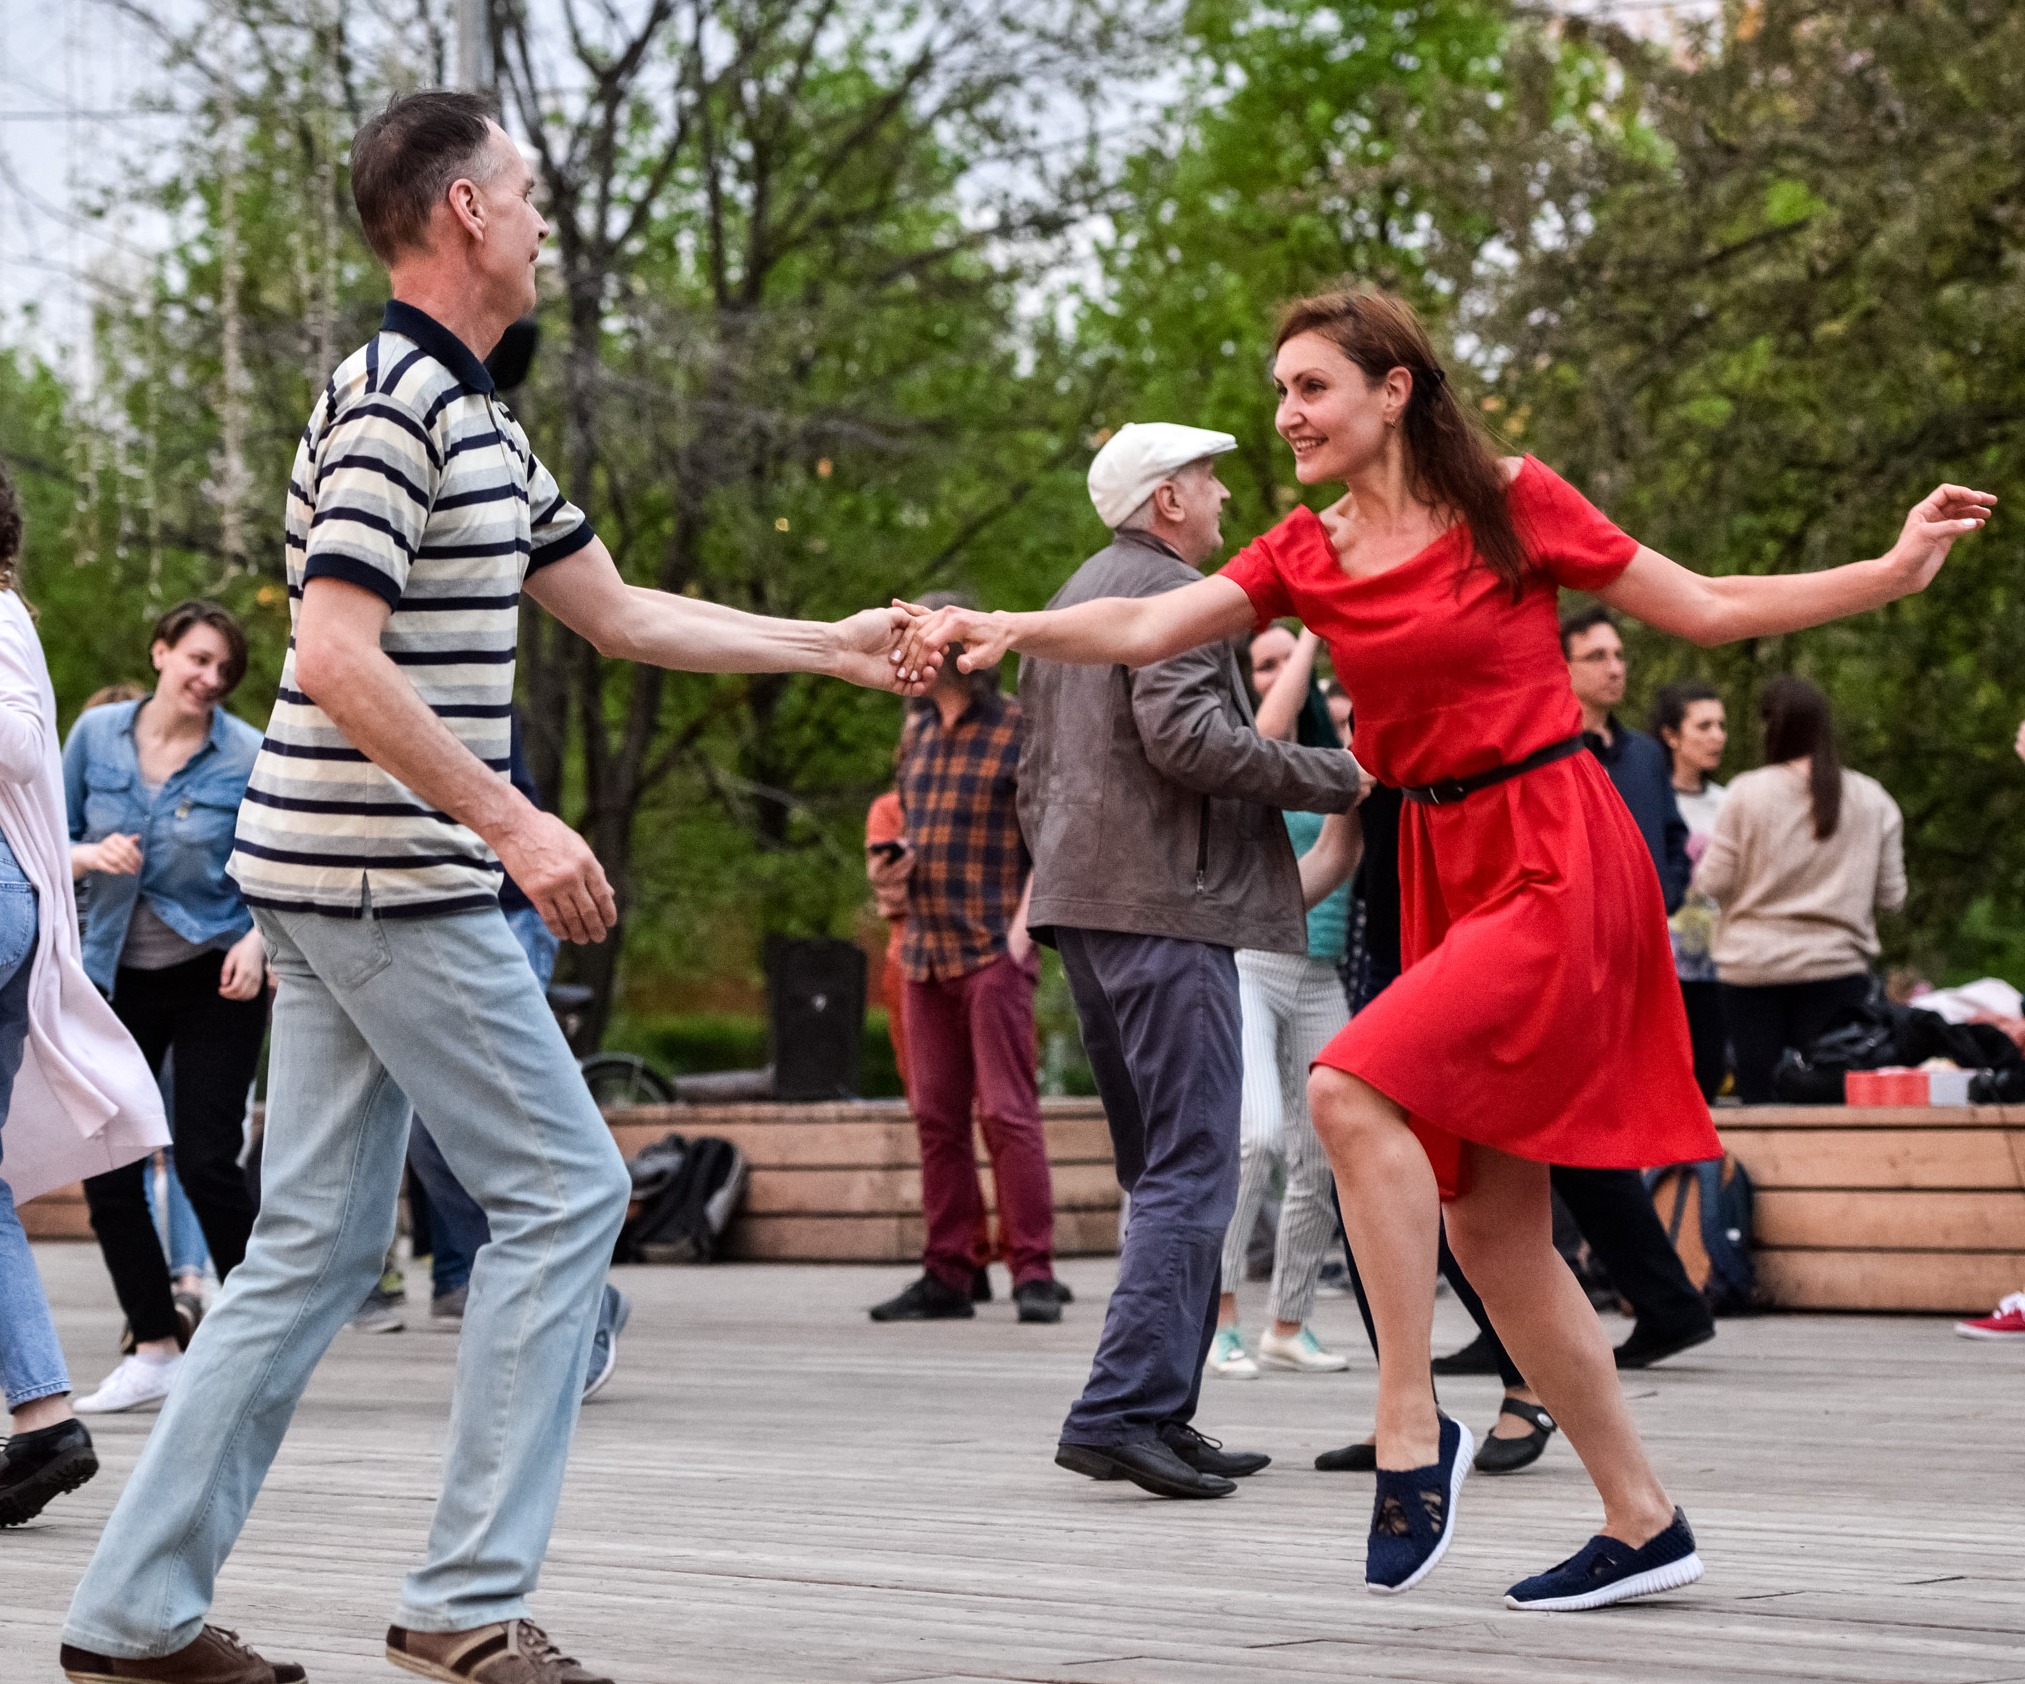 Вечером будут танцы. Танцплощадка в парке Горького. Танцевальные площадки в парке Горького в Москве. Танцы в парке. Люди танцуют в парке.